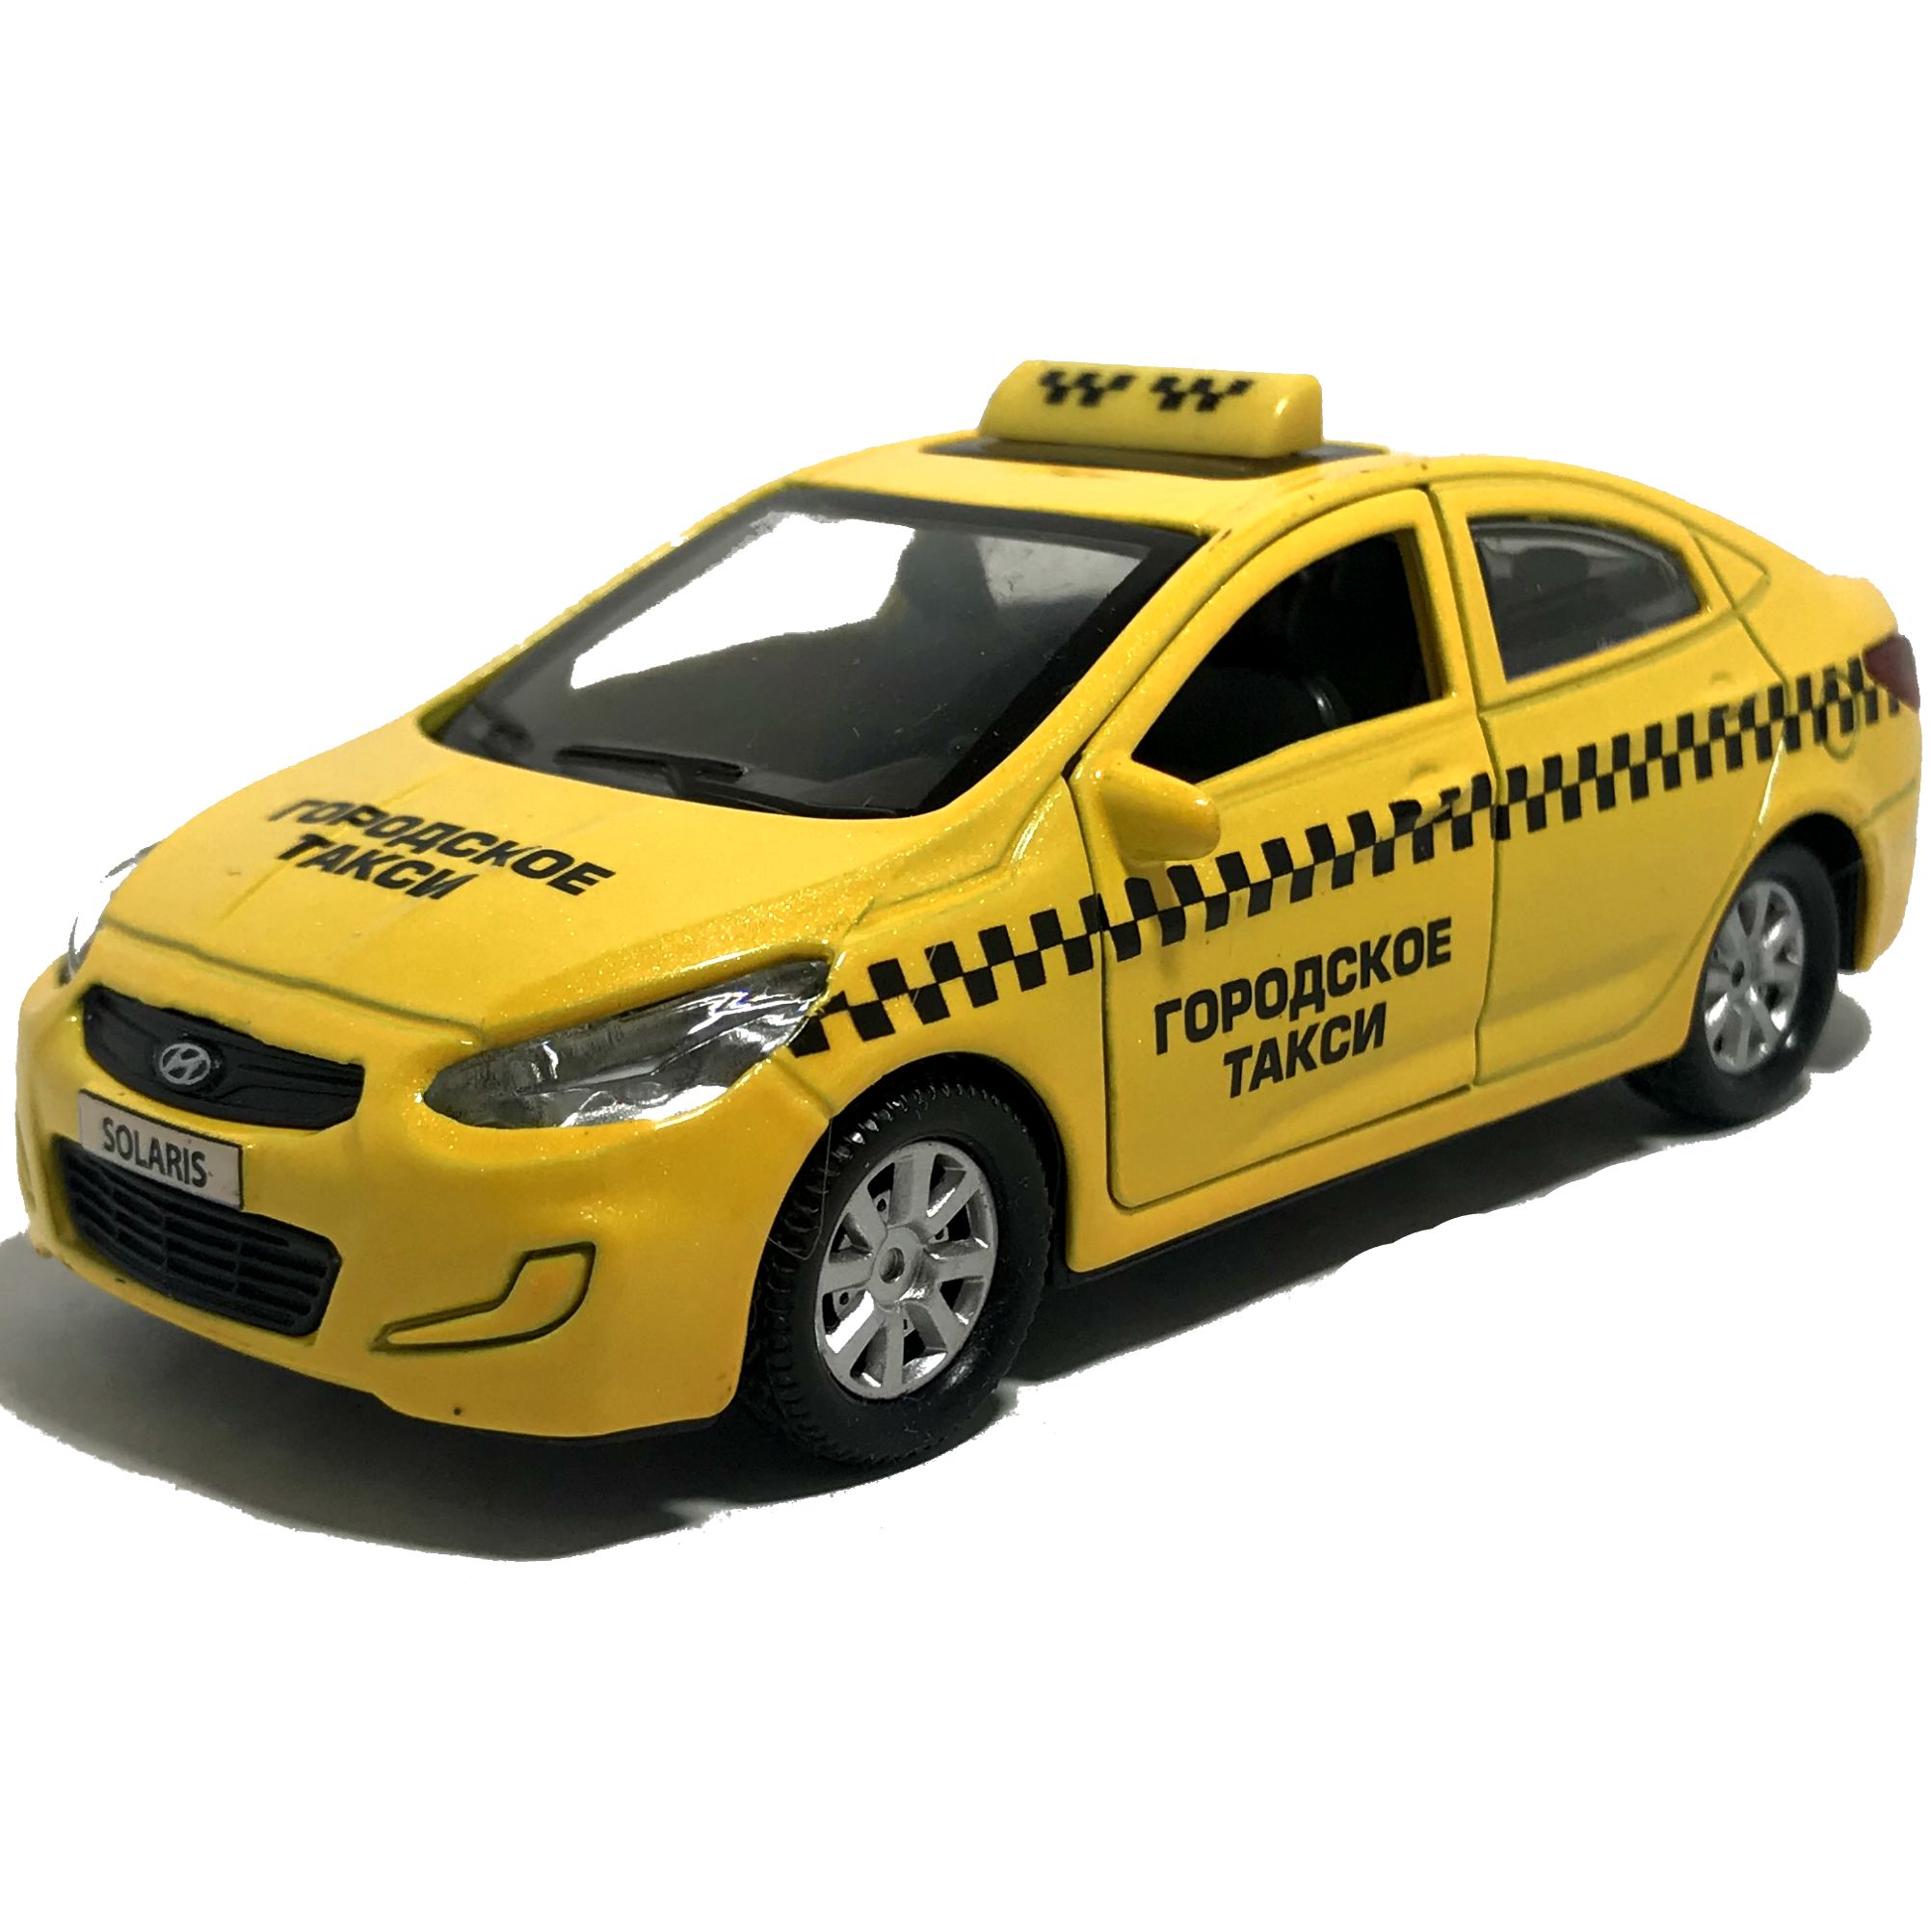 Как заказать детское такси. Машинки Технопарк Хендай Солярис такси. Hyundai Solaris такси игрушечная машинка. Машинки Технопарк Хендай Солярис. Хендай Солярис игрушка Технопарк.